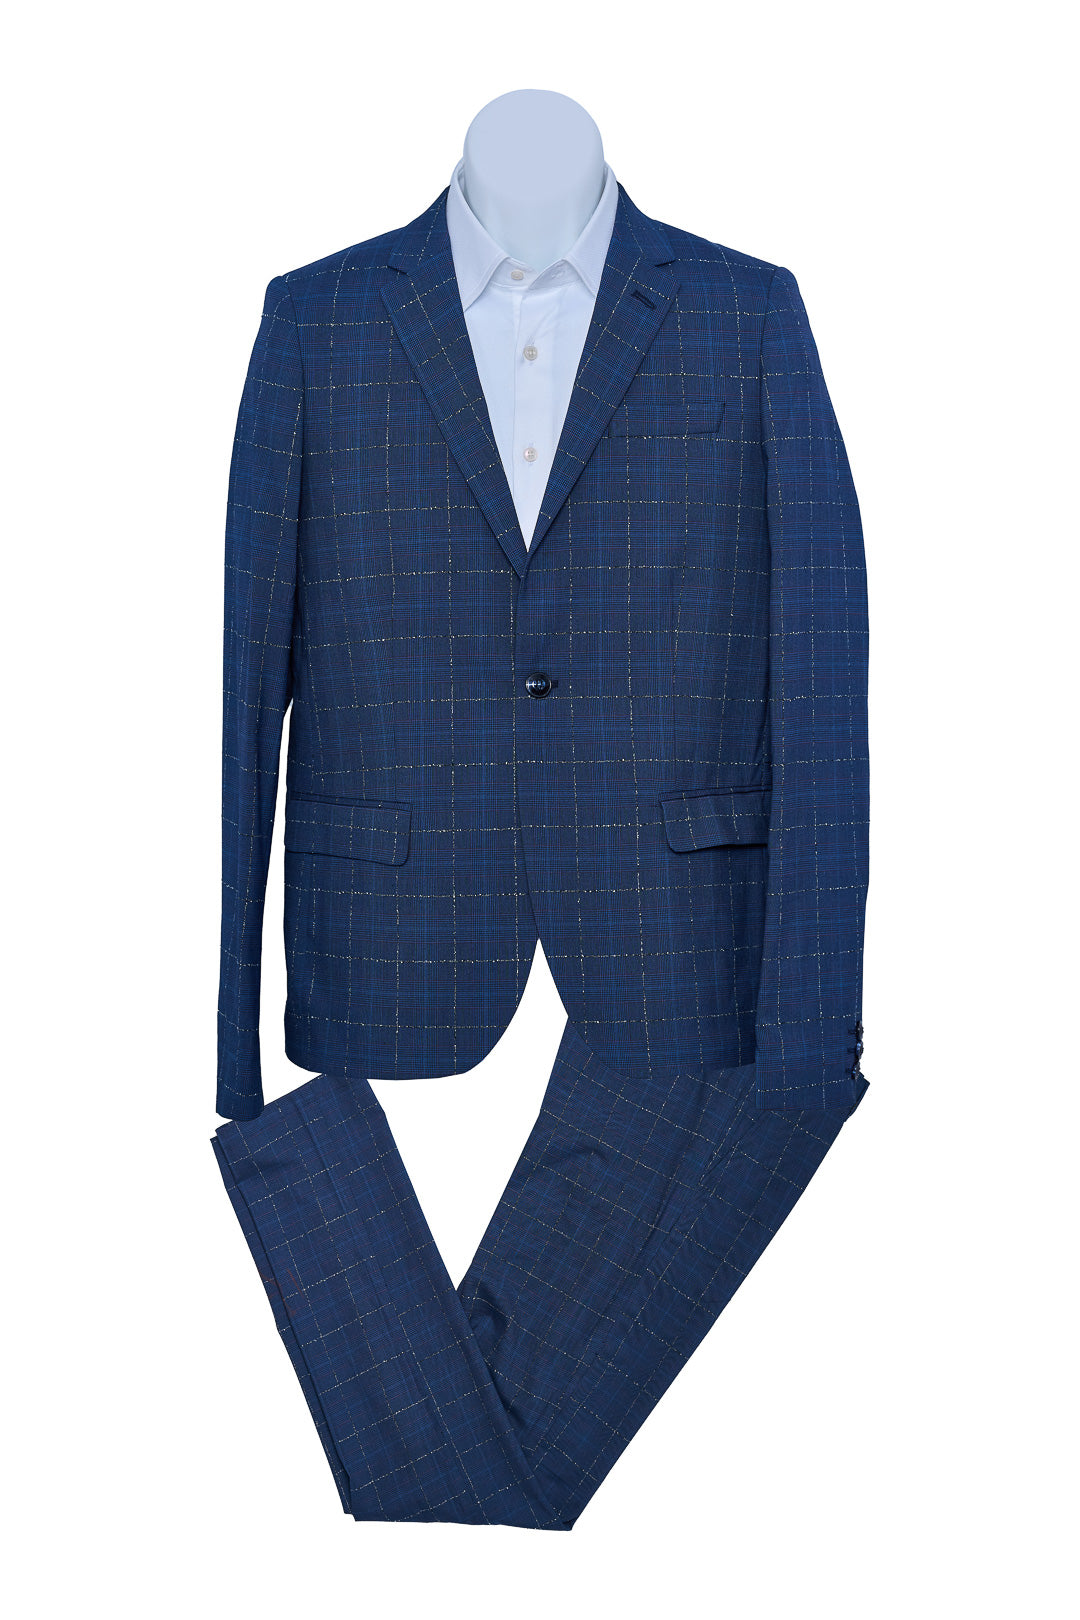 Electric Blue Check Suit